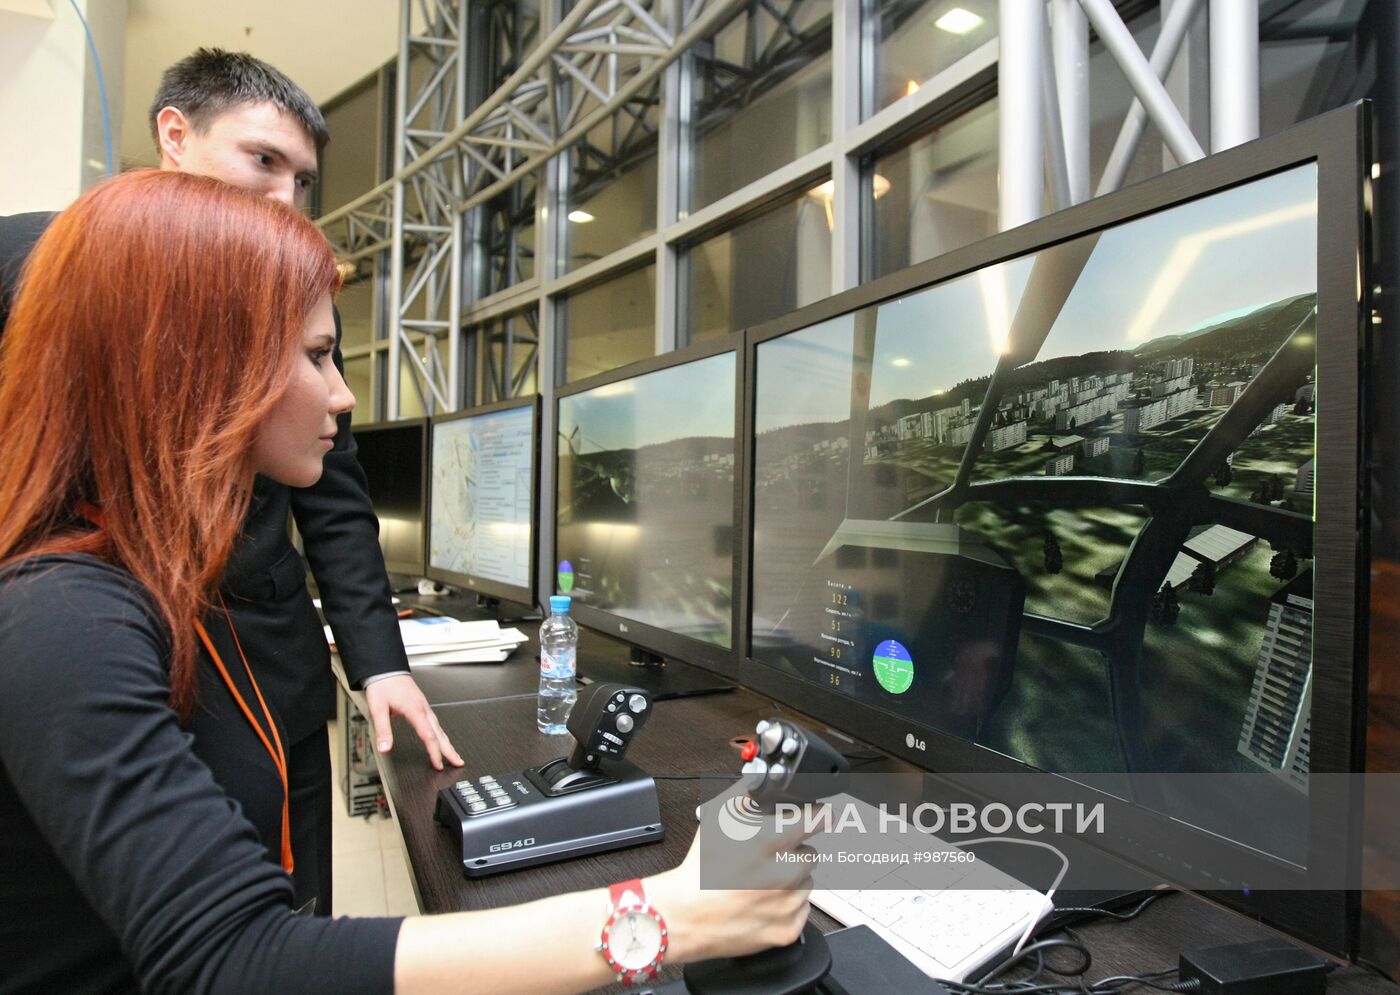 Анна Чапман приняла участие в форуме "iCamp Kazan 2011"